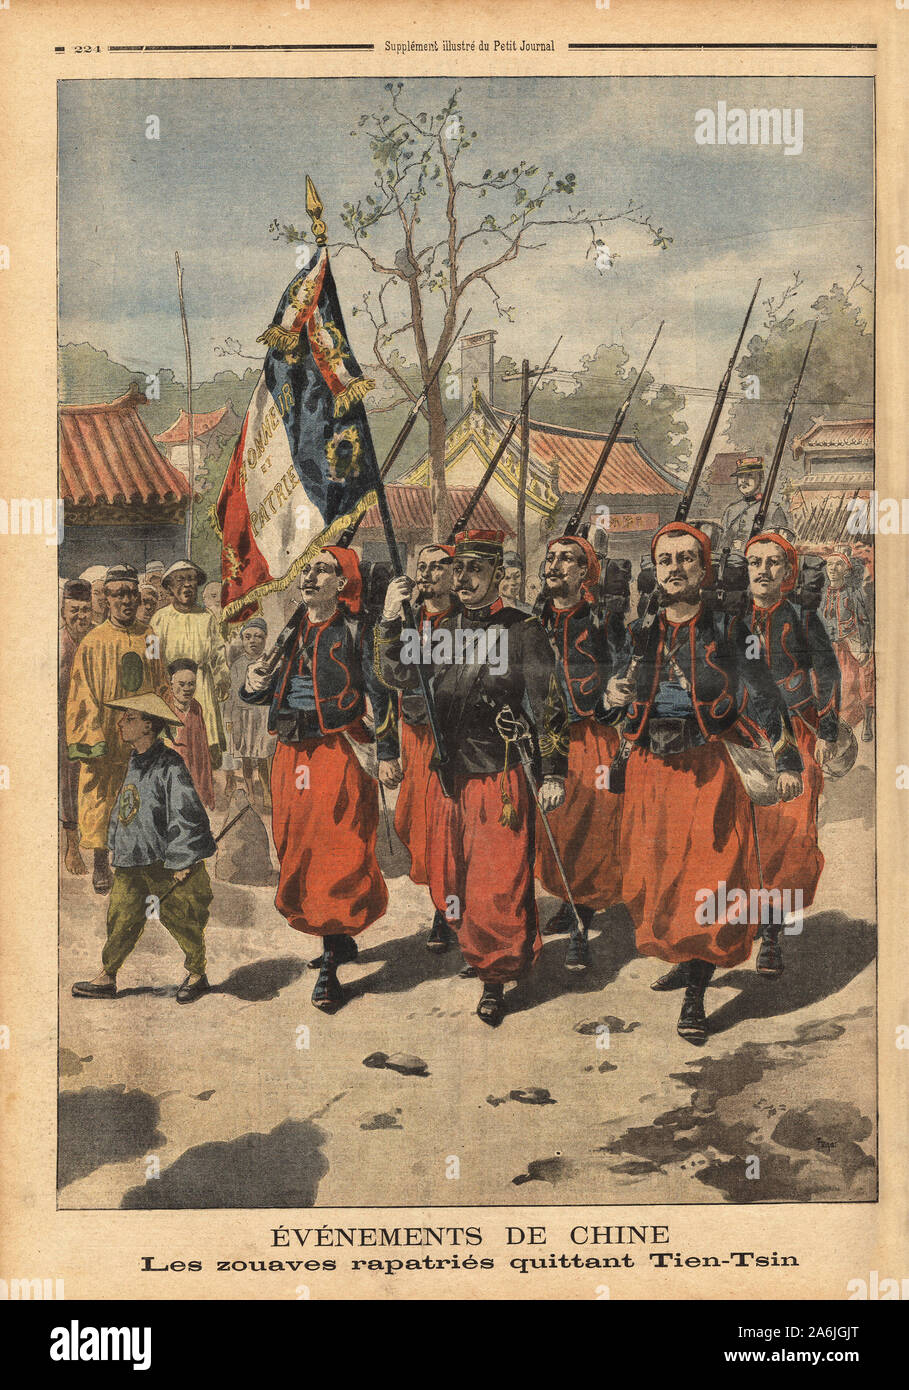 Les zouaves rapatries defilent dans les rues de Tien Tsin ( Chine), avant d'embarquer pour leur rapatriement. Gravure in 'Le petit journal' 14/7/1901. Stock Photo